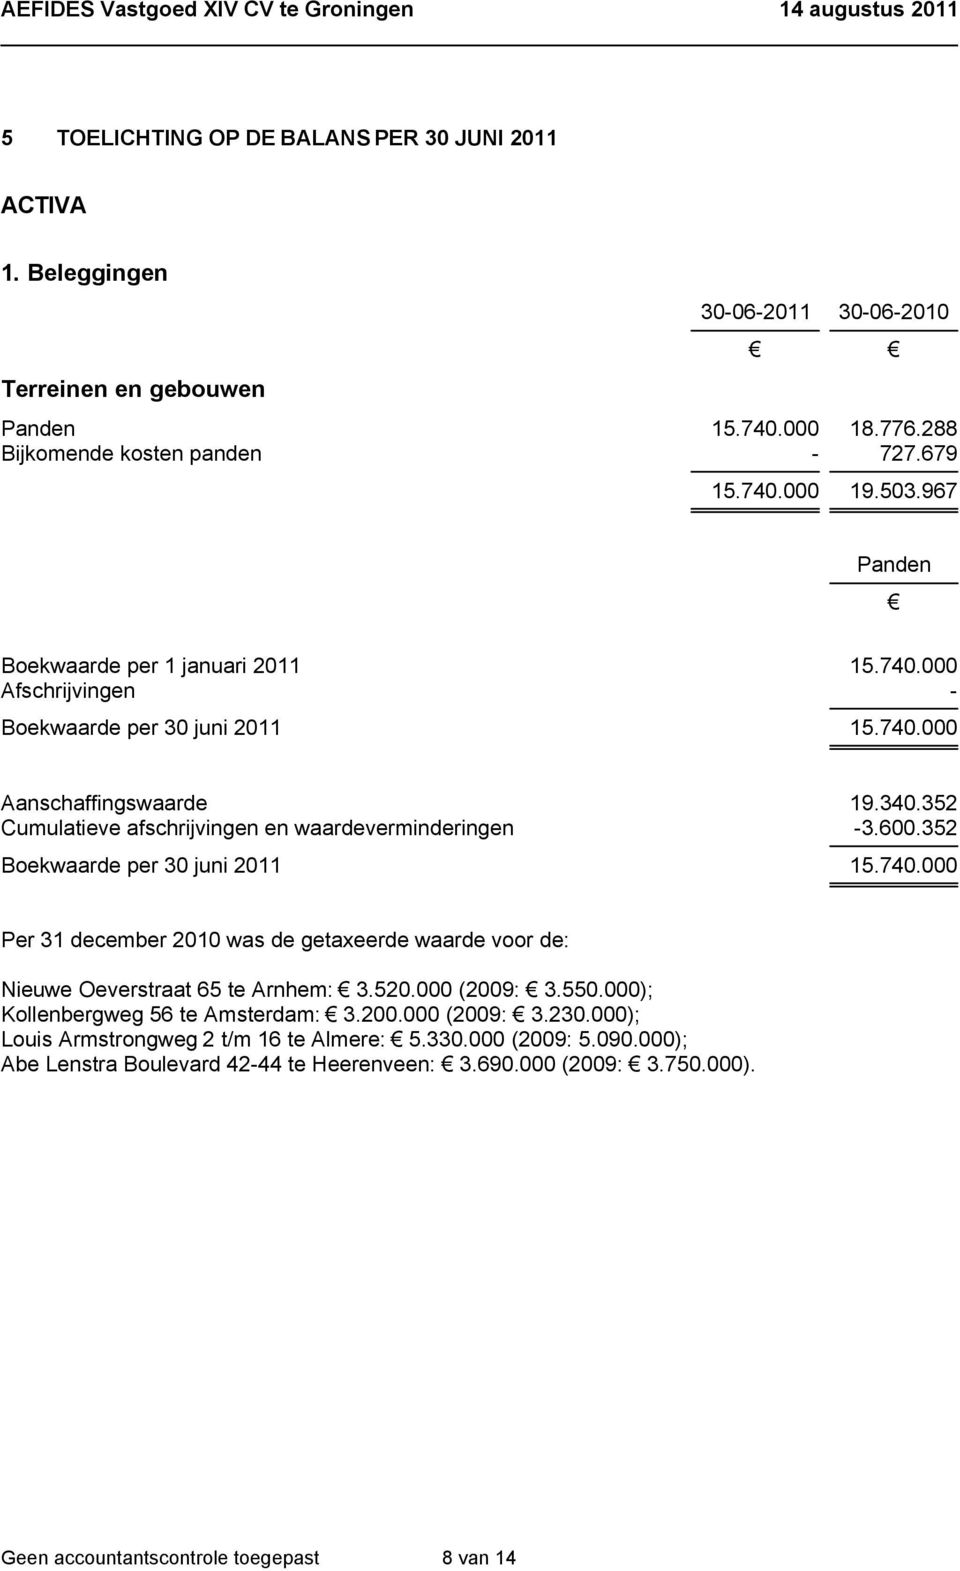 352 Boekwaarde per 30 juni 2011 15.740.000 Per 31 december 2010 was de getaxeerde waarde voor de: Nieuwe Oeverstraat 65 te Arnhem: 3.520.000 (2009: 3.550.000); Kollenbergweg 56 te Amsterdam: 3.200.000 (2009: 3.230.